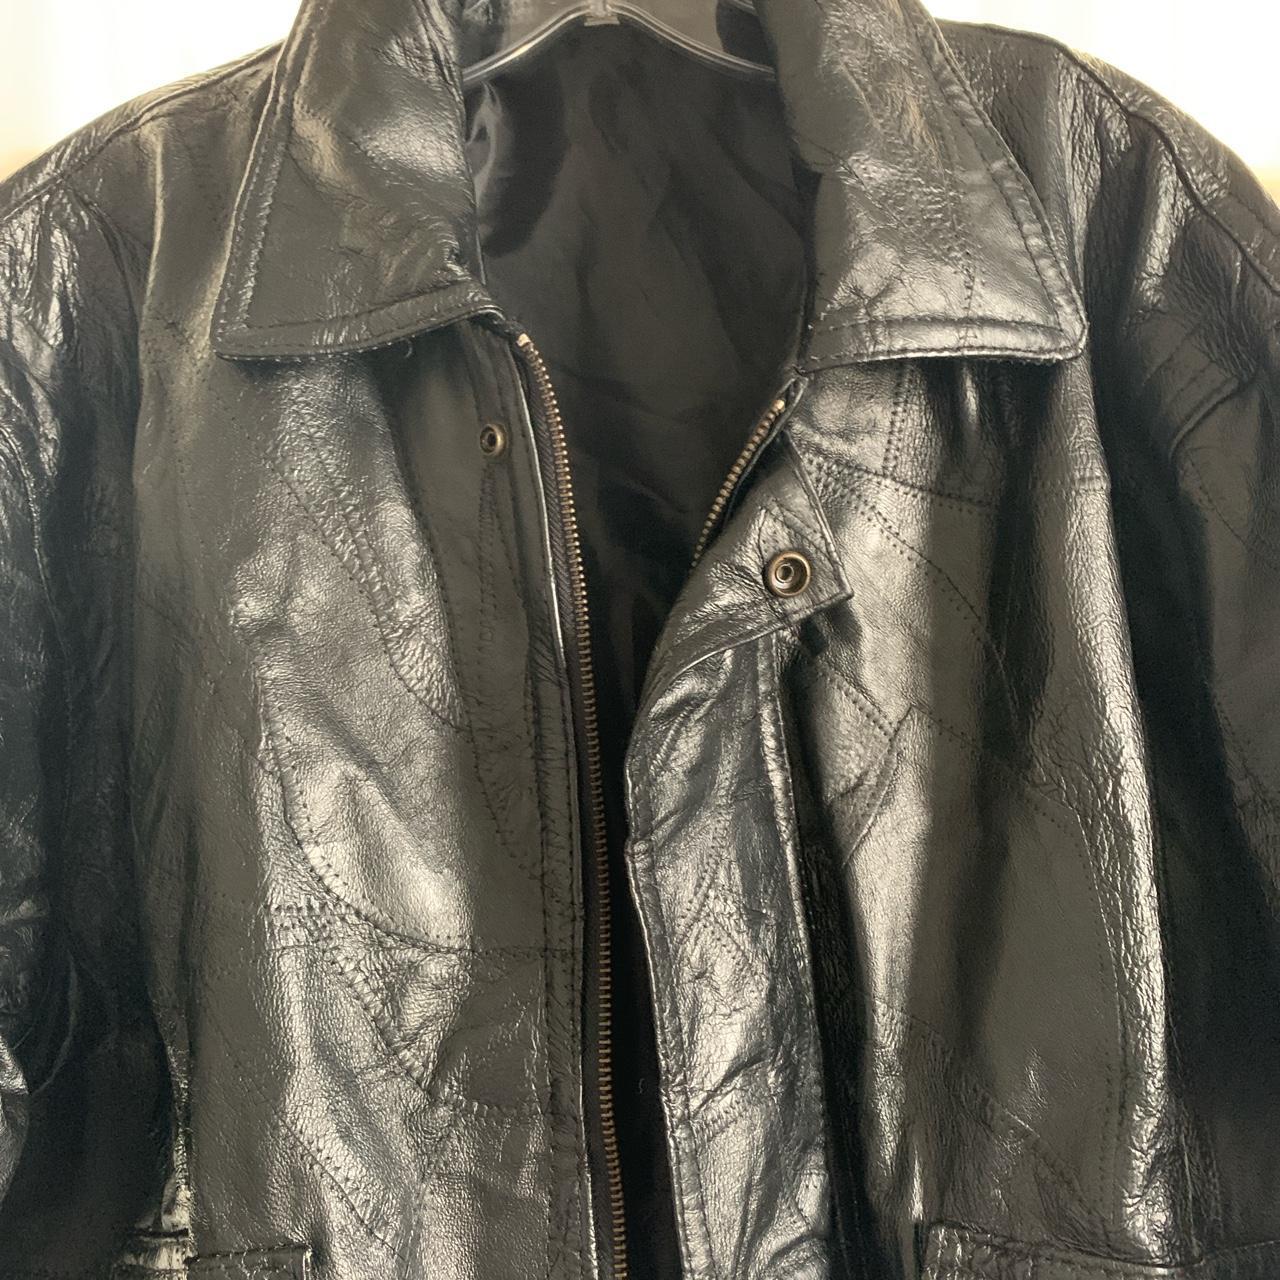 Large black leather jacket #vintageleatherjacket... - Depop